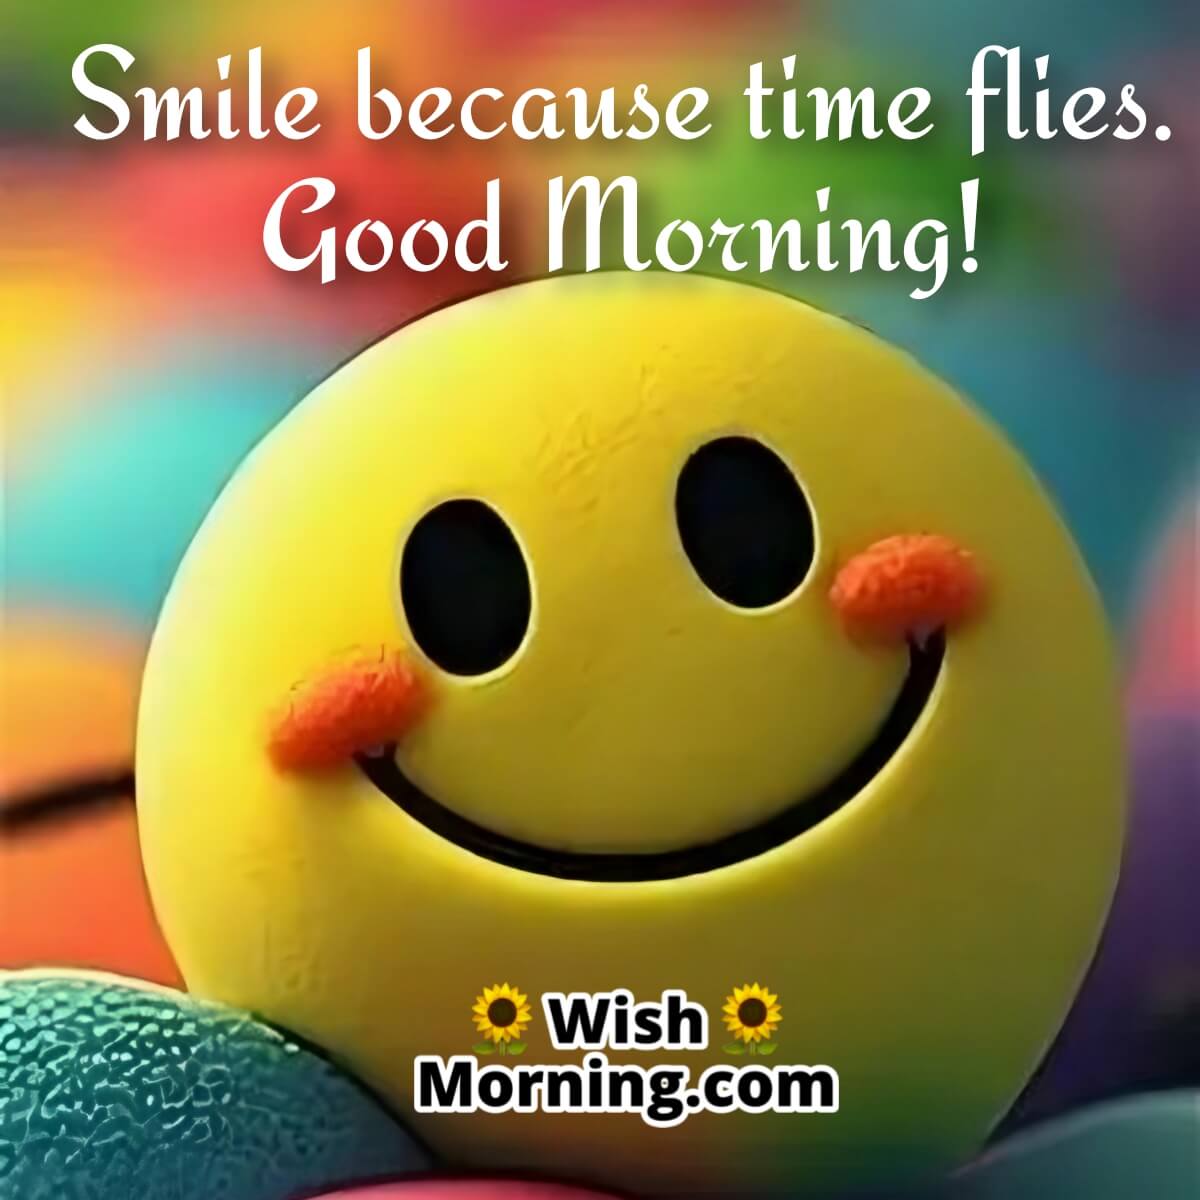 Good Morning 4k Hd Image On Smile